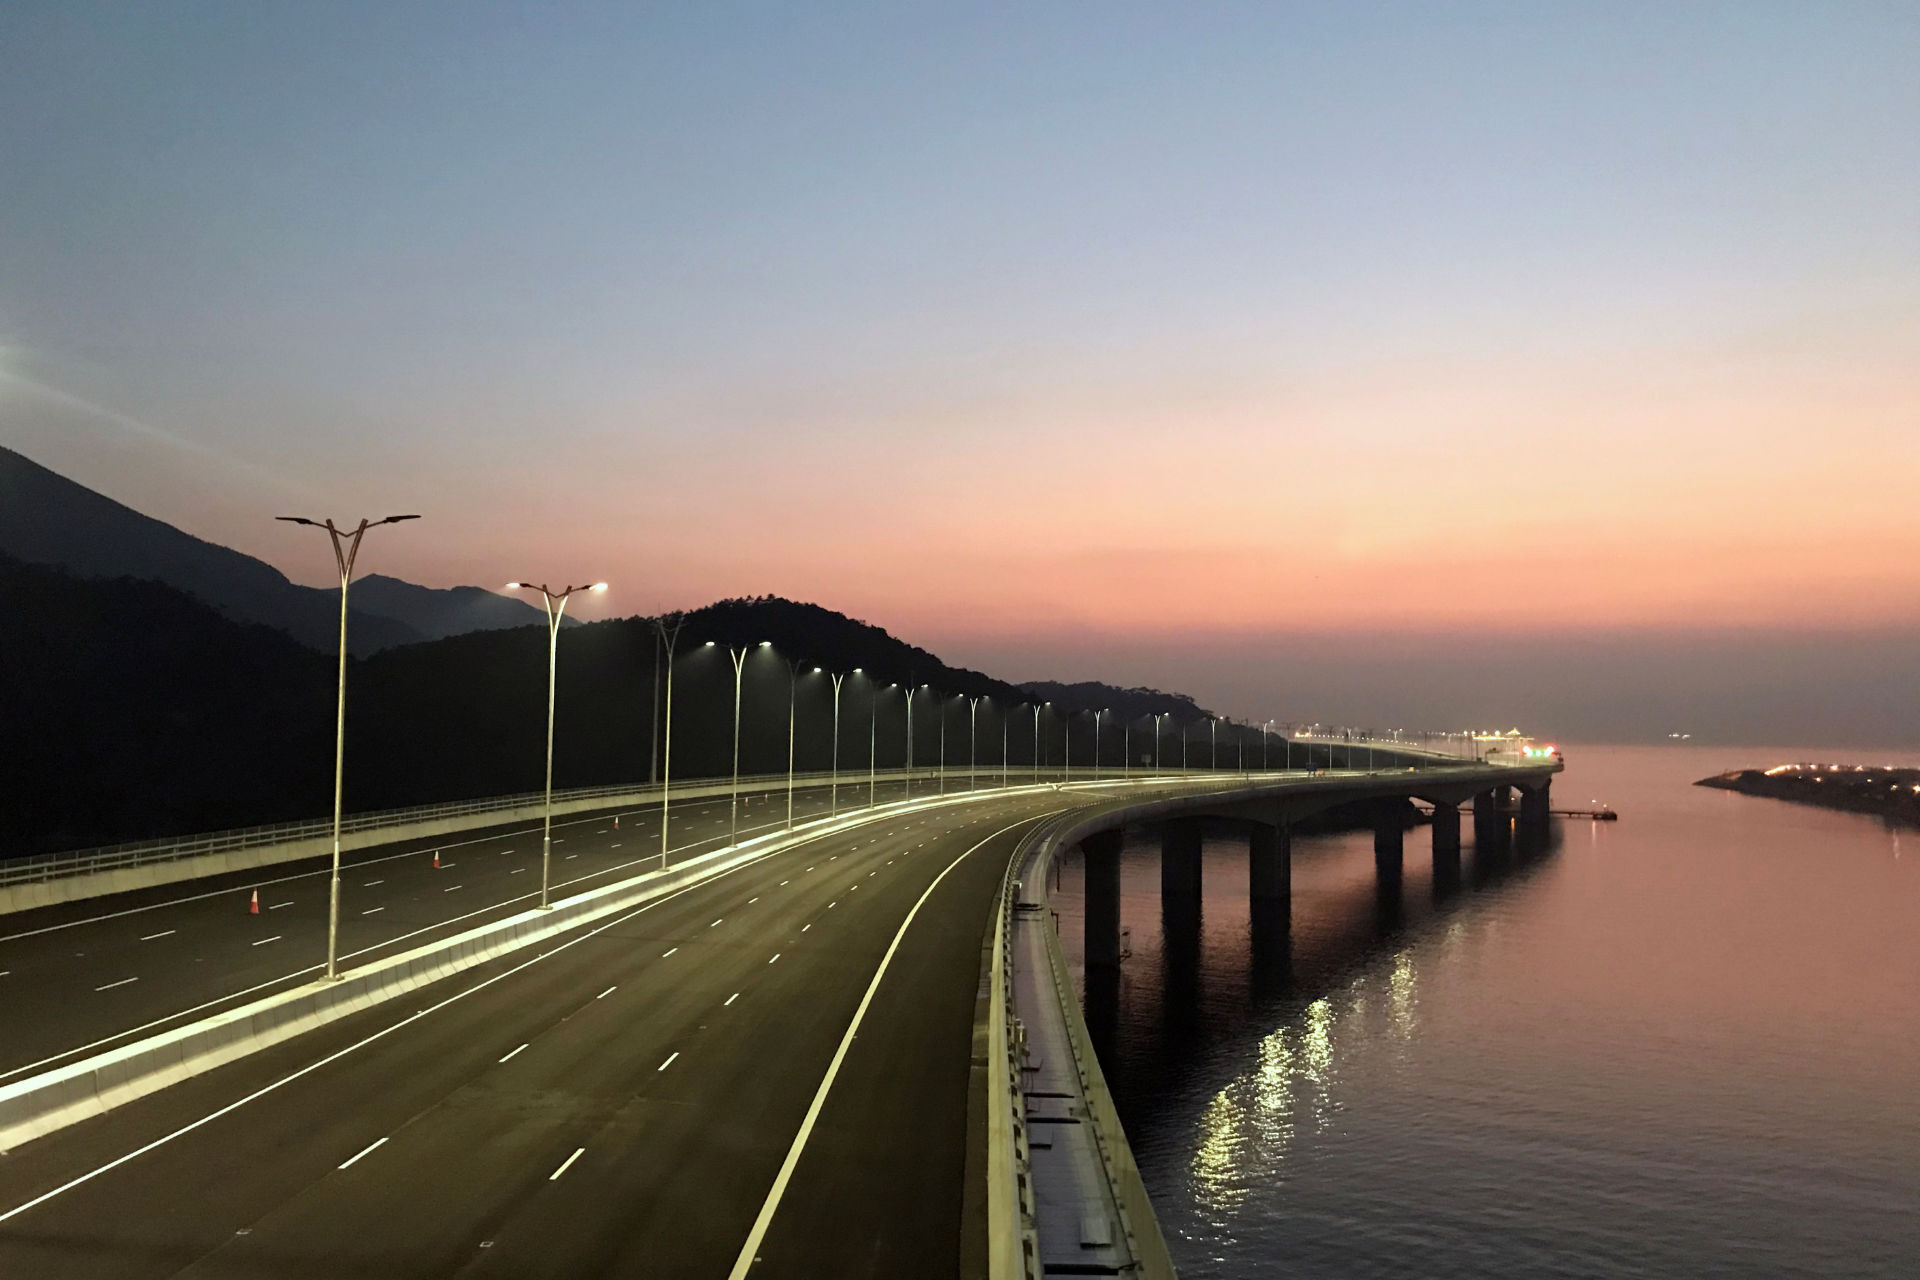 港珠澳大桥香港口岸「右上左落」行车安排